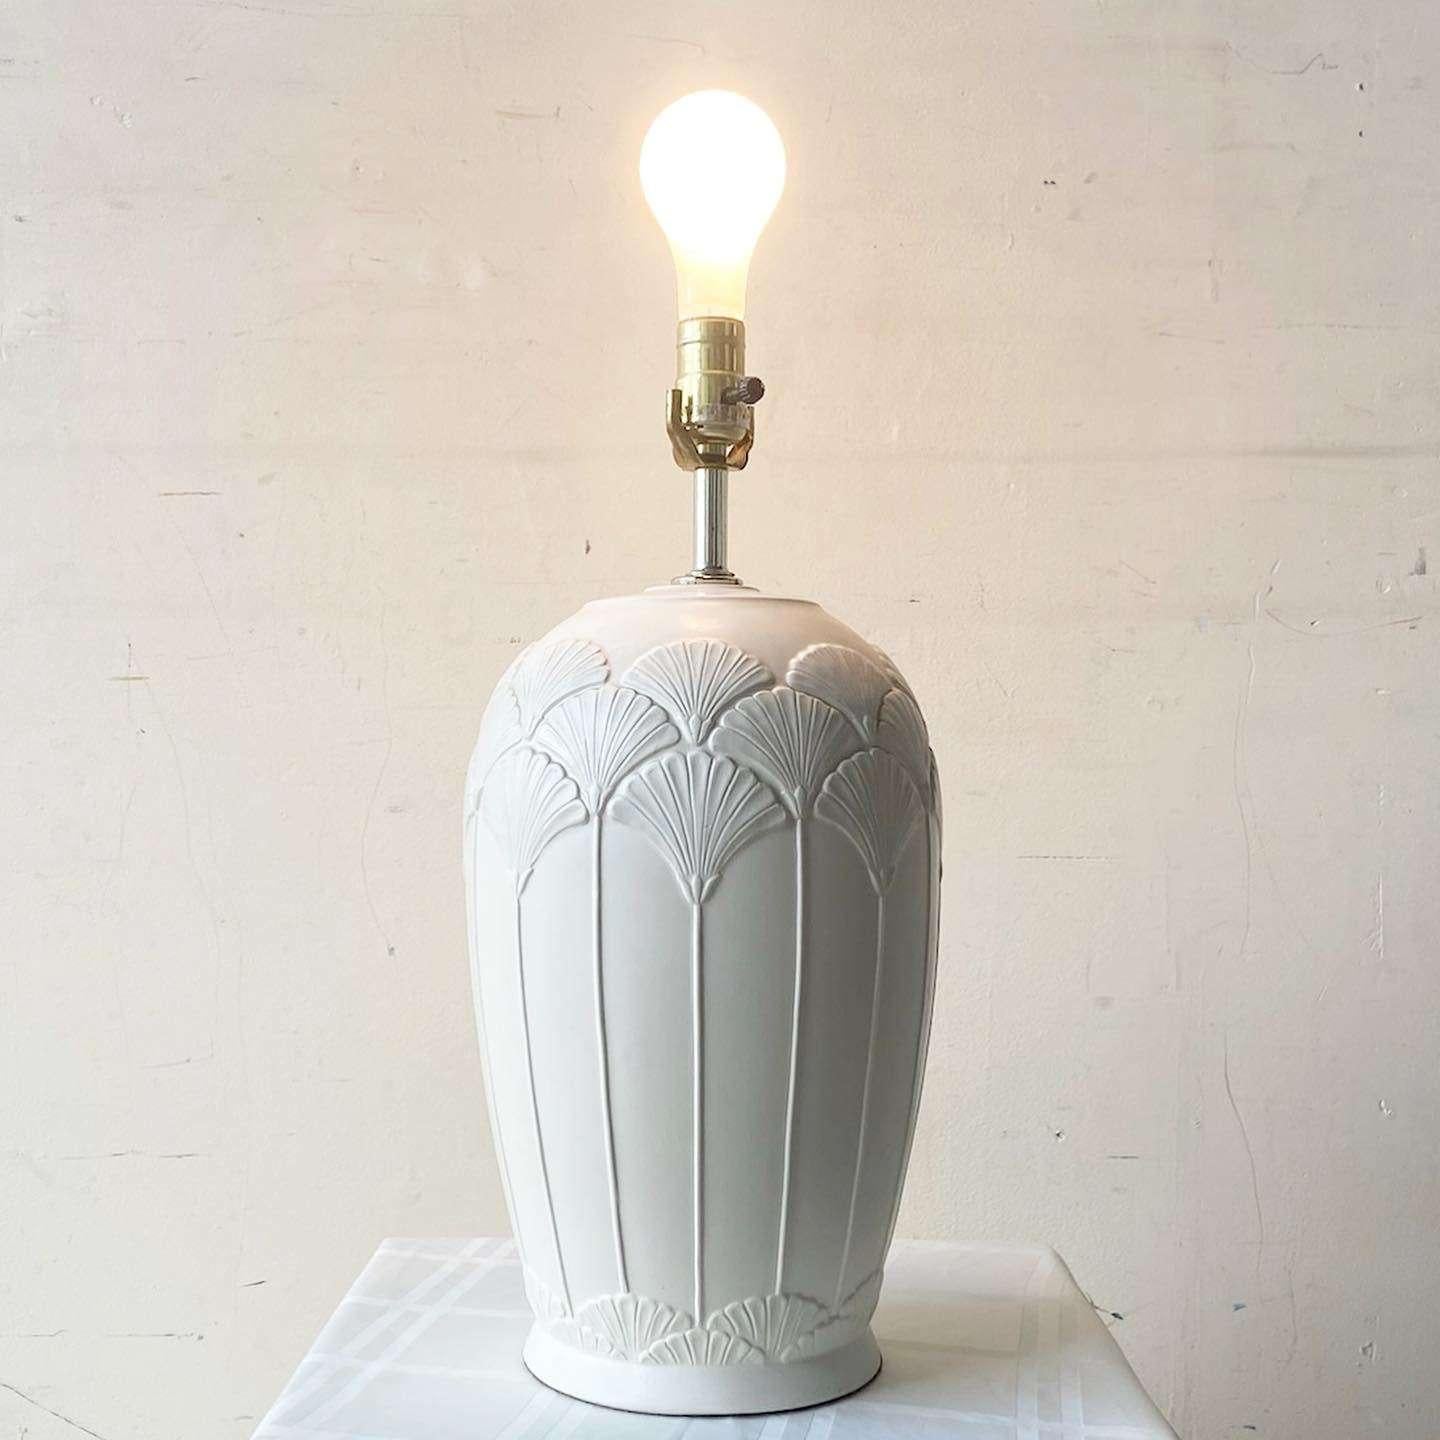 Erstaunliche postmoderne Keramik-Tischlampe im Vintage-Stil. Mit geätzten Blumen rund um den Lampenkörper und beiger Oberfläche.
